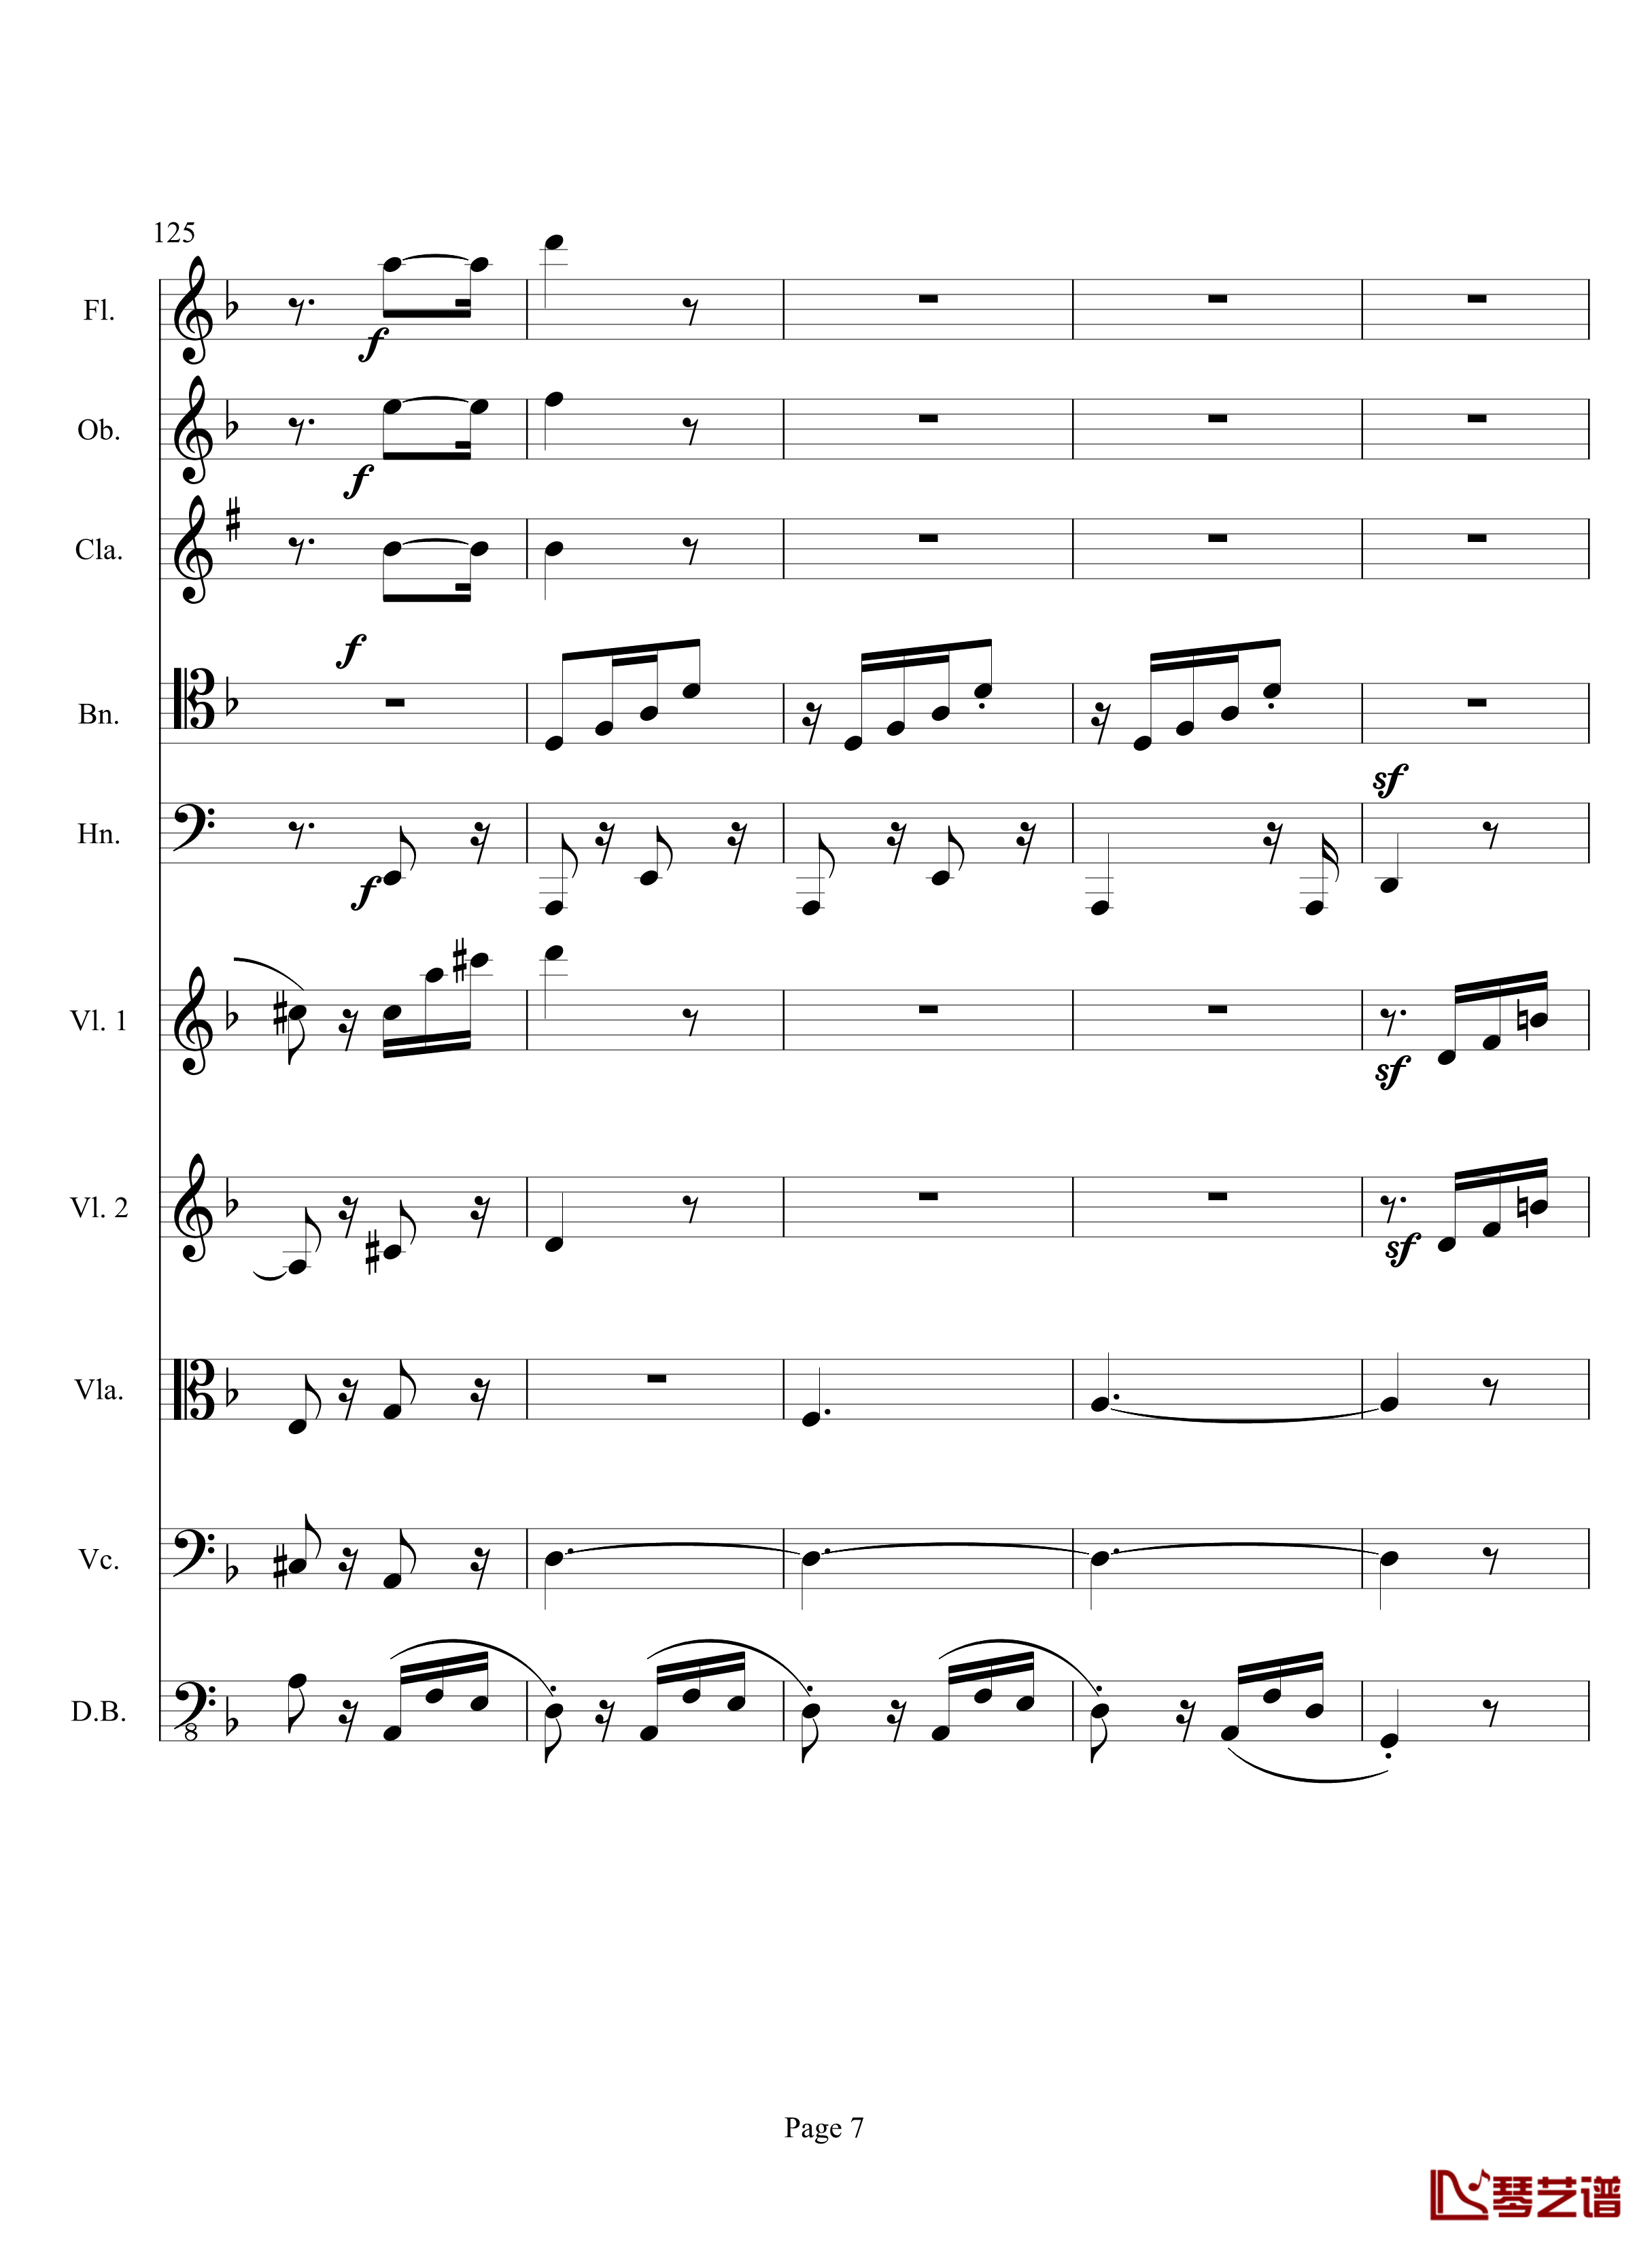 奏鸣曲之交响钢琴谱-第17首-Ⅲ-贝多芬-beethoven7